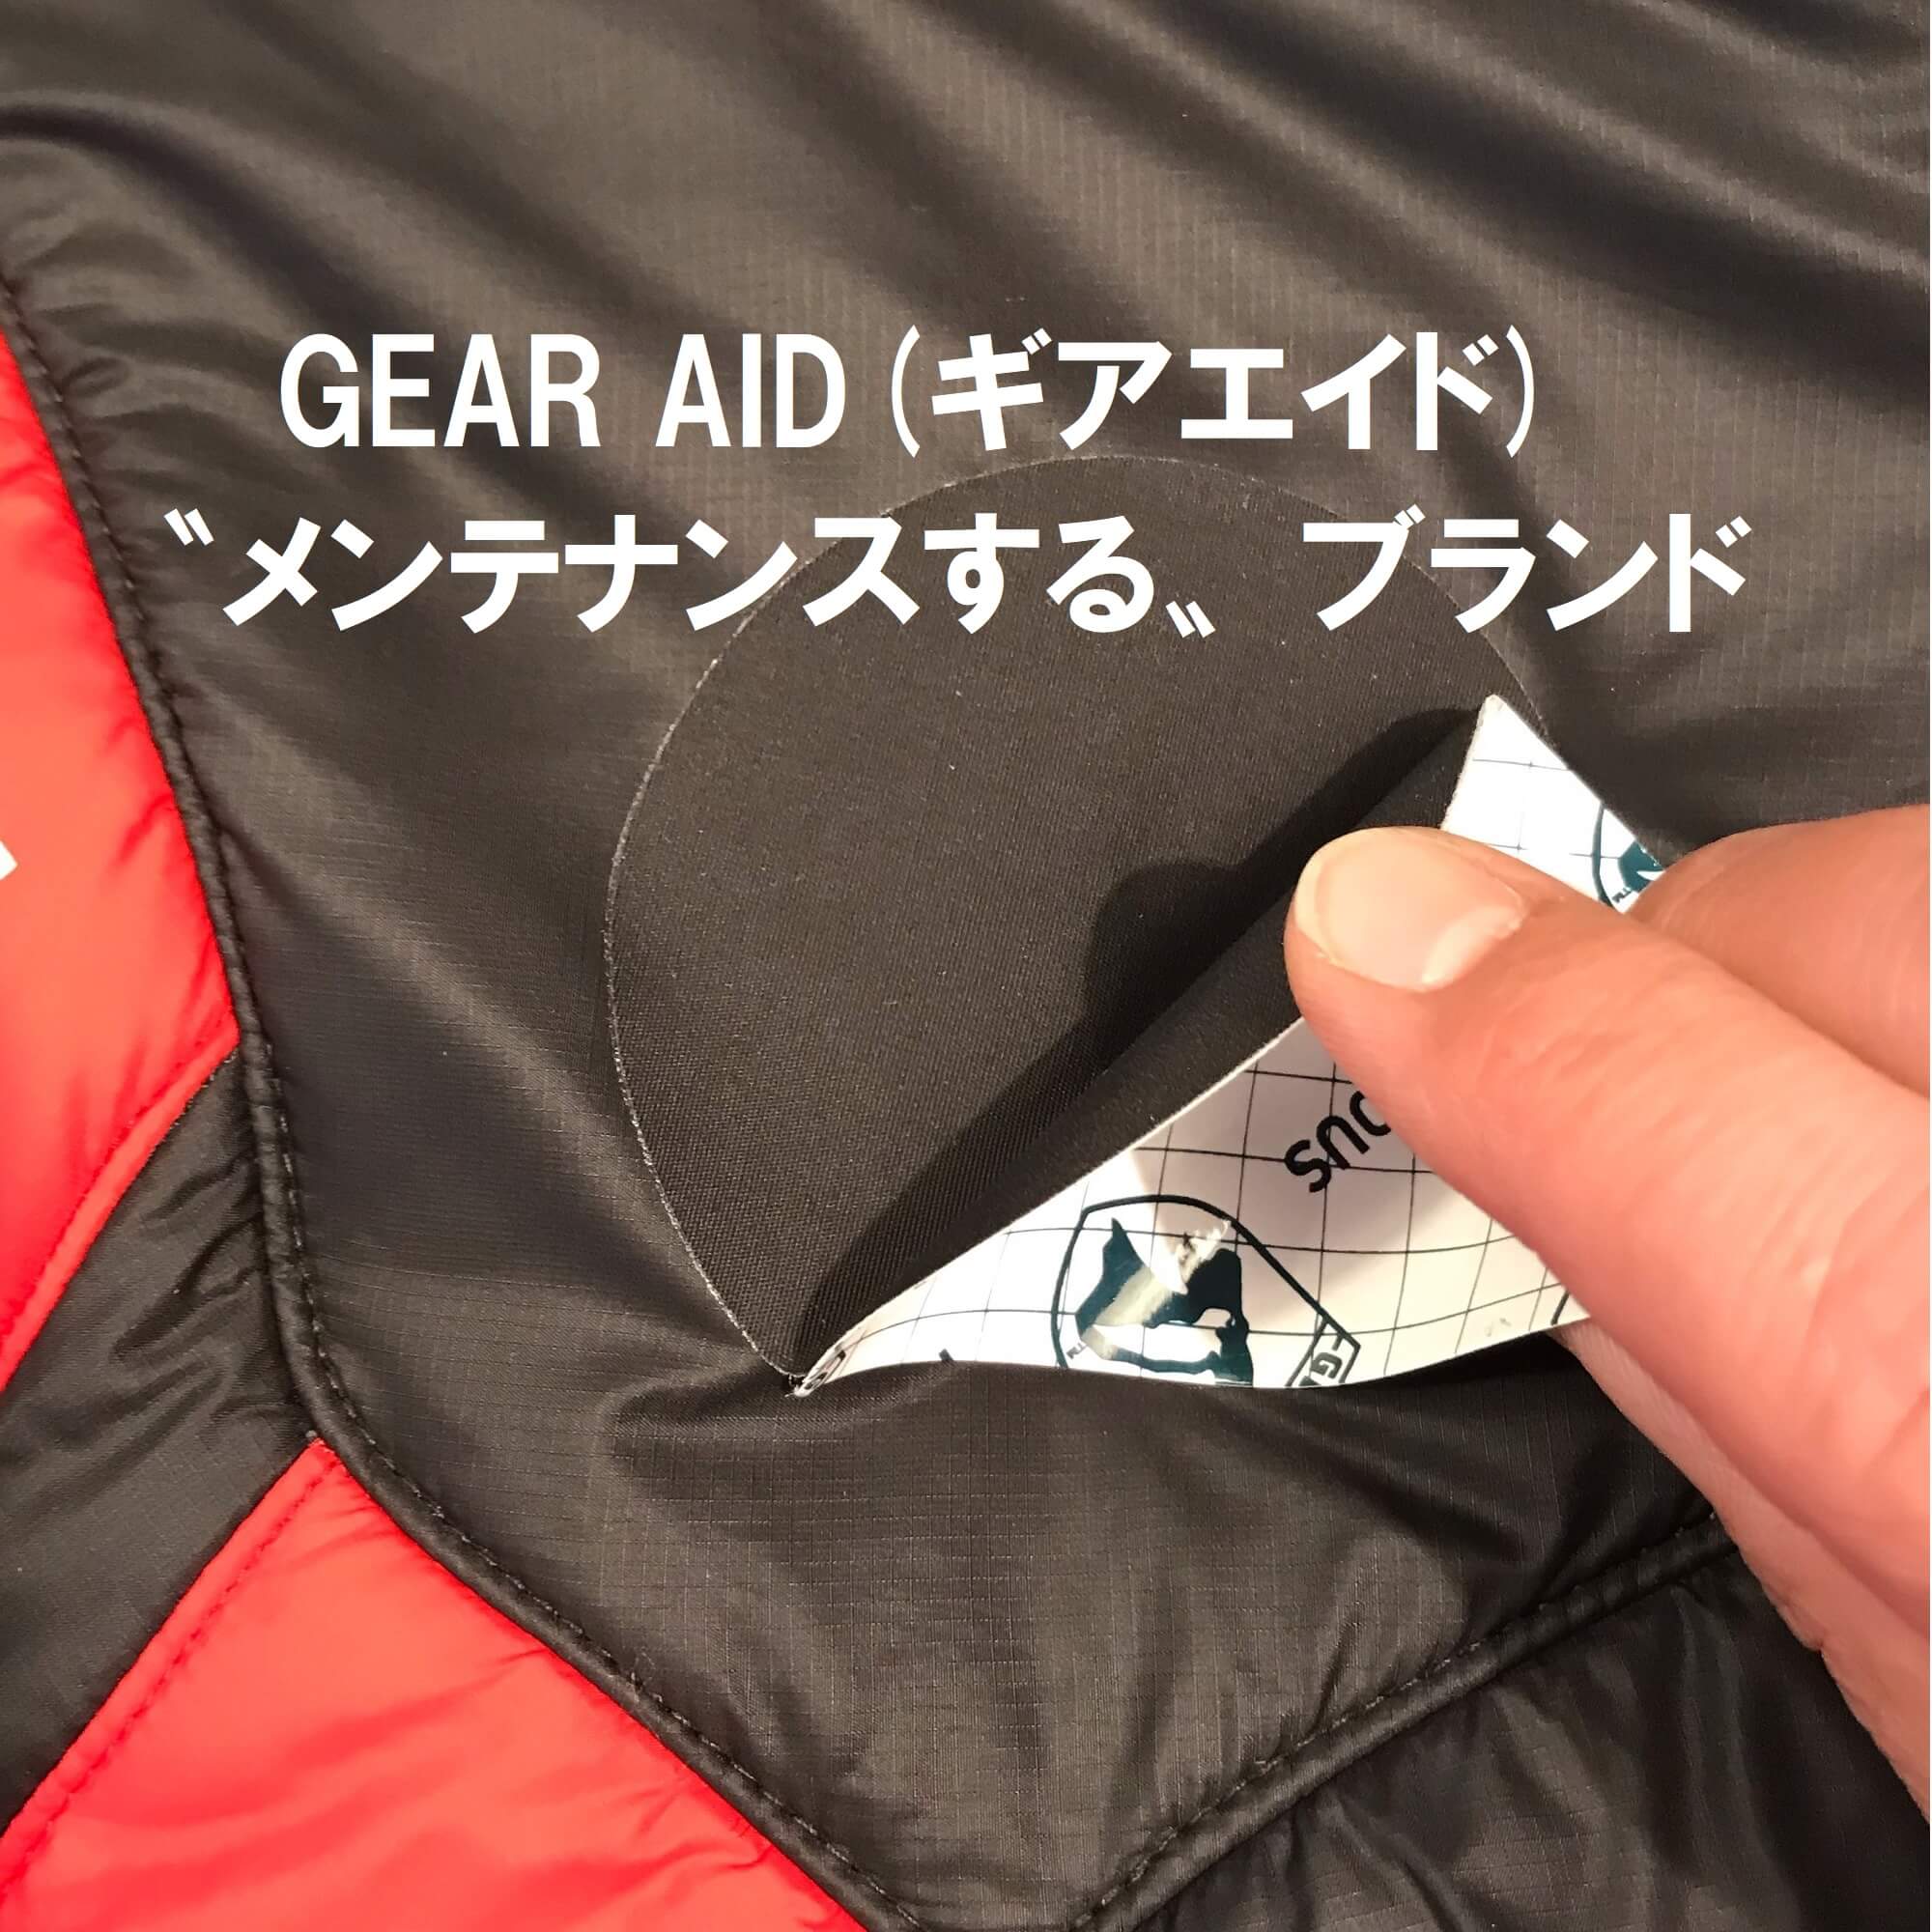 GEAR AID(ギアエイド) 〝メンテナンスする〟ブランド アウトドアとキャンプの専門店:マウンテンプロダクツ